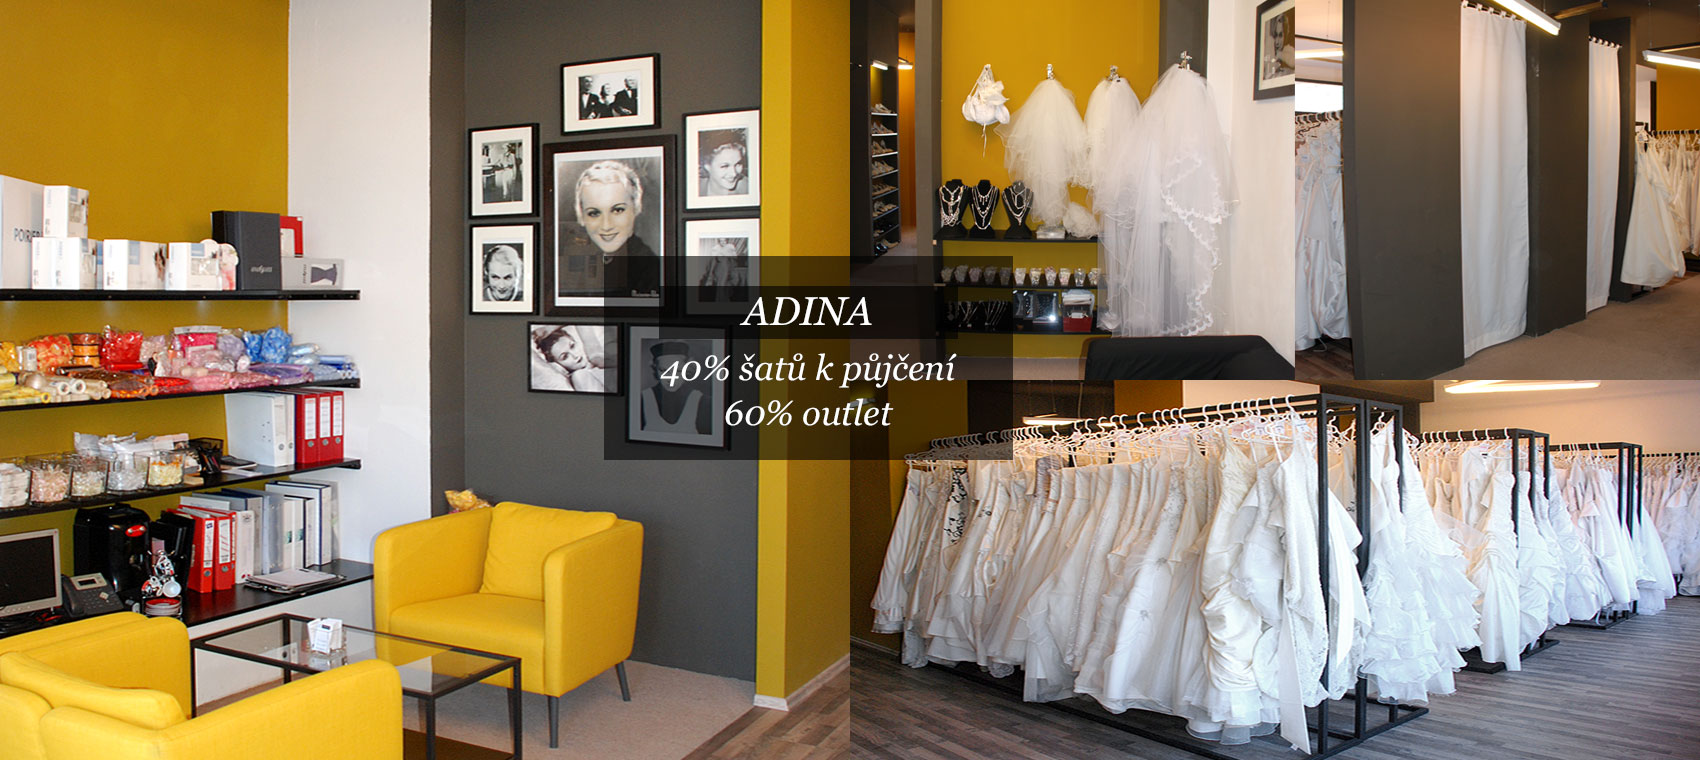 Svatební centrum ADINA